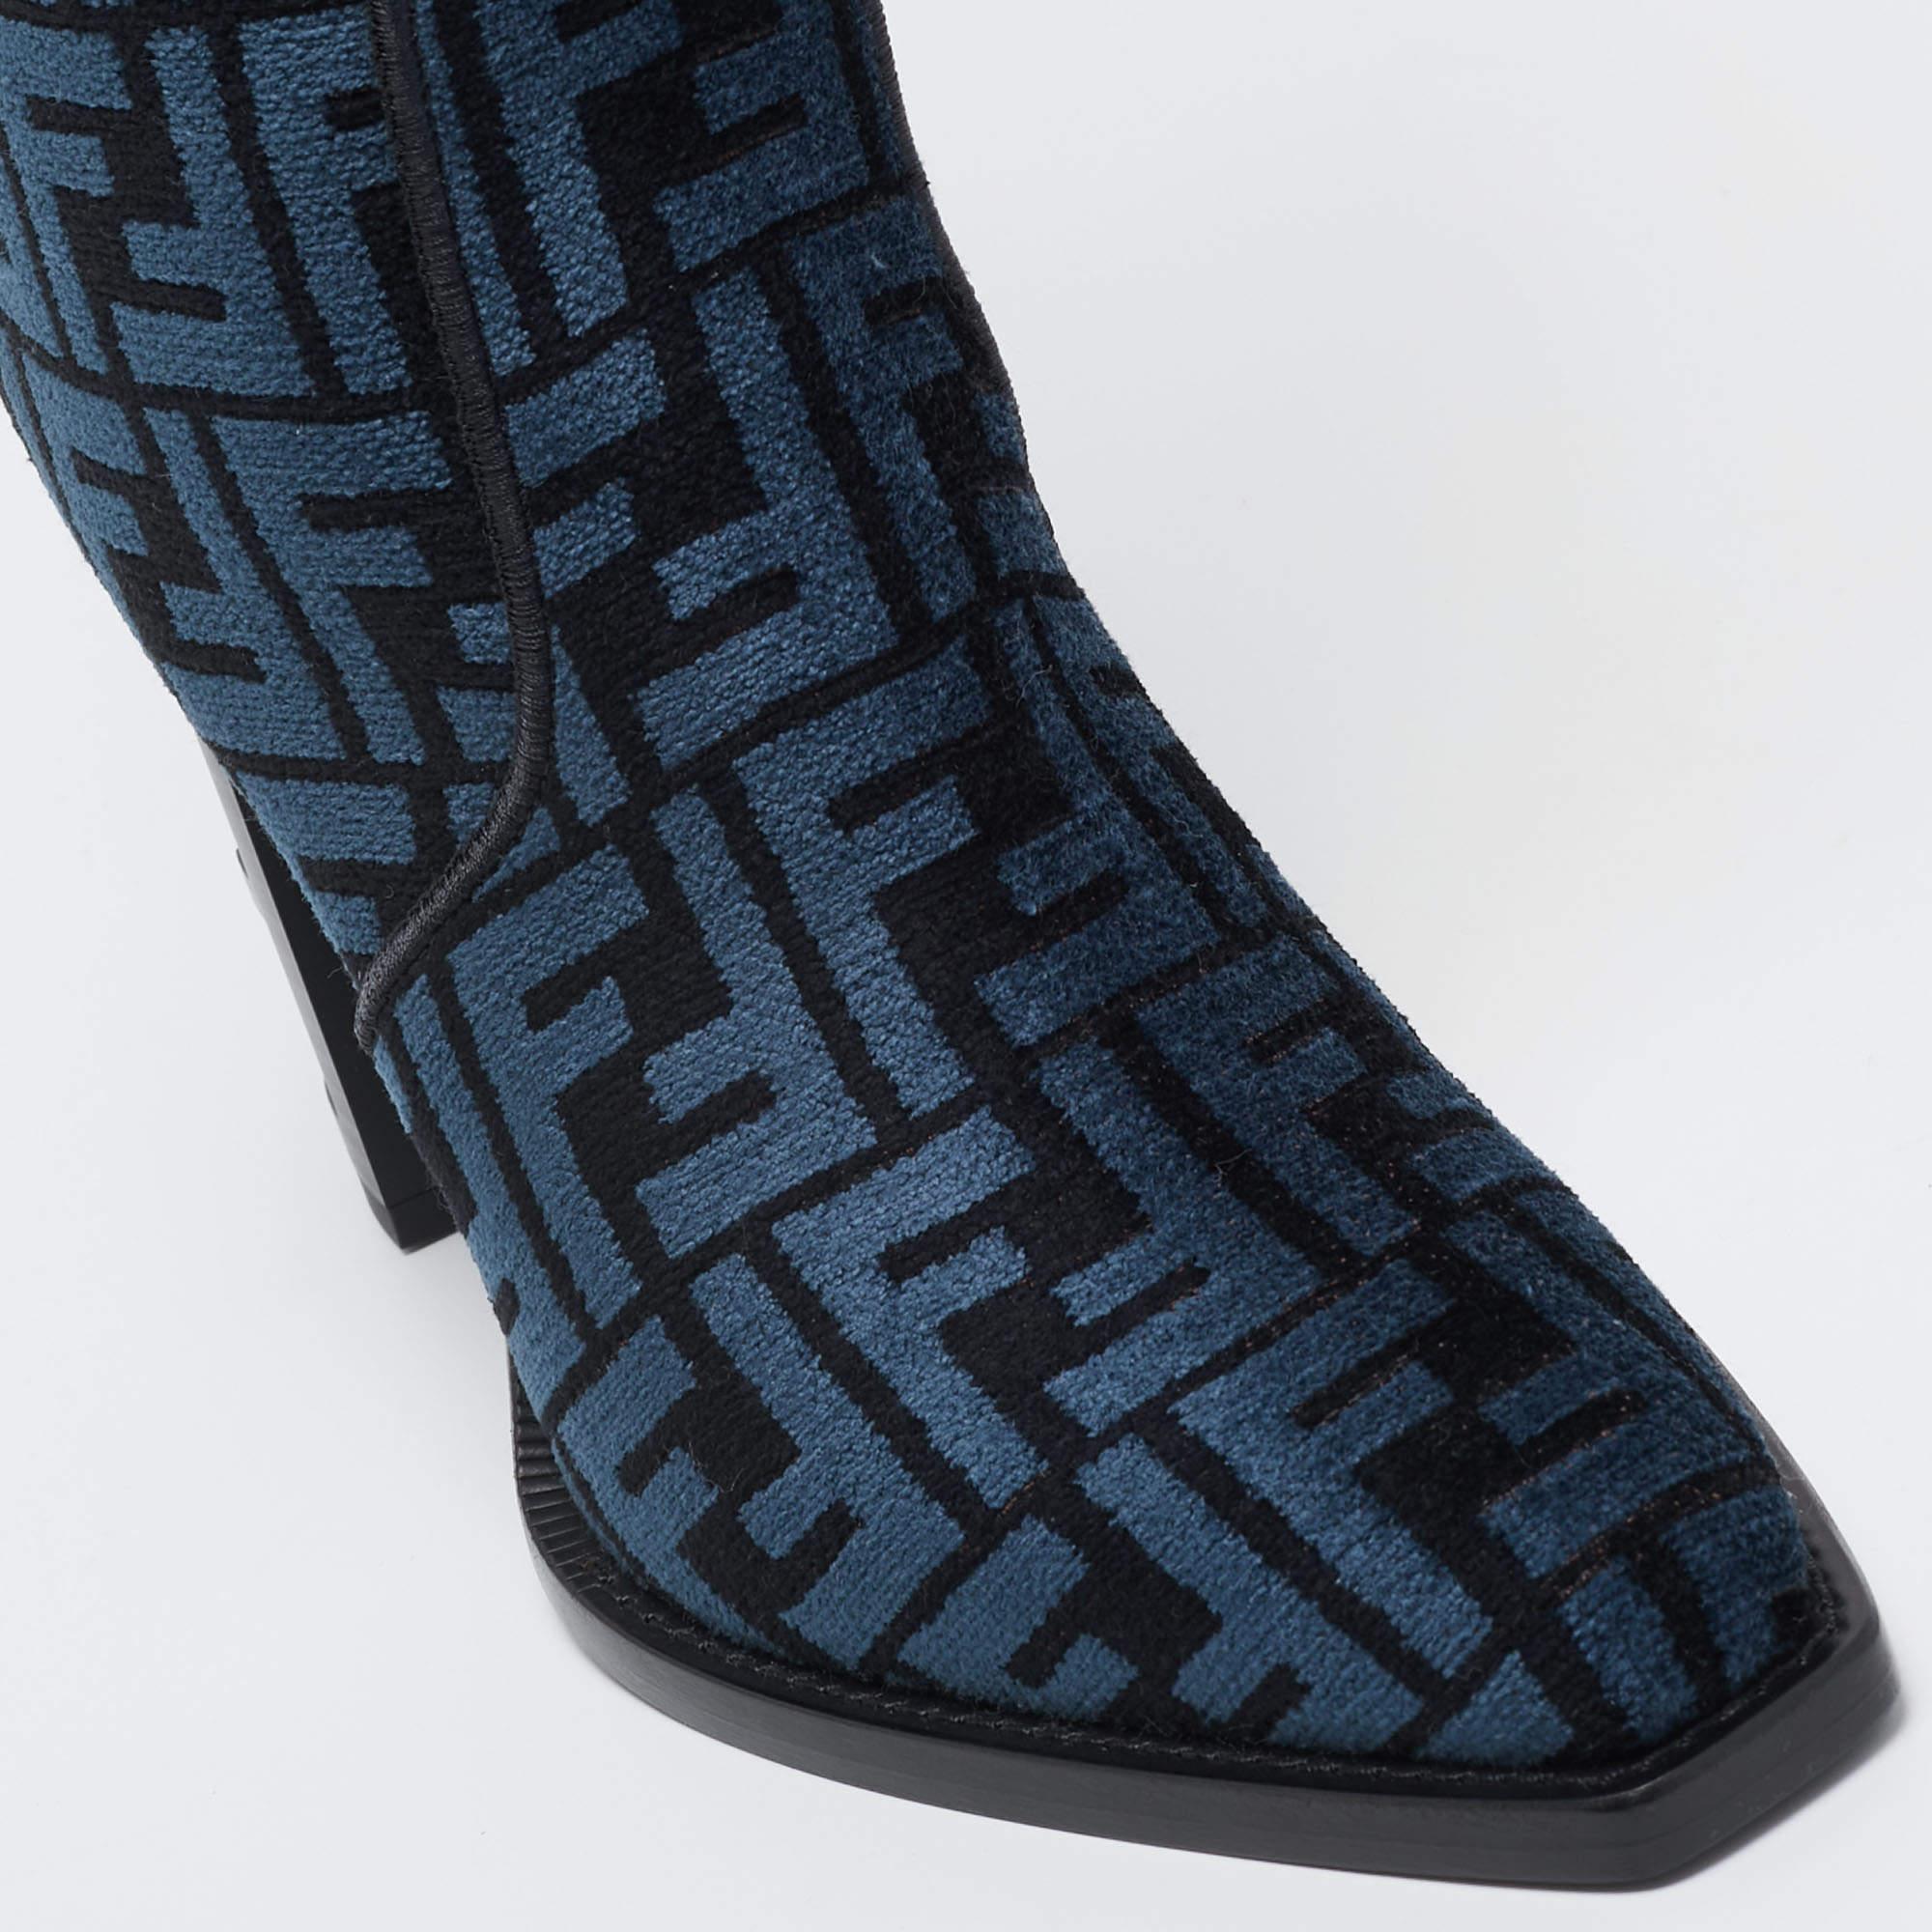 Les bottes sont un élément essentiel de votre garde-robe, et ces bottes, fabriquées à partir de matériaux de première qualité, sont un bon choix. Offrant le meilleur du confort et du style, cette paire à semelle robuste sera parfaite avec un jean